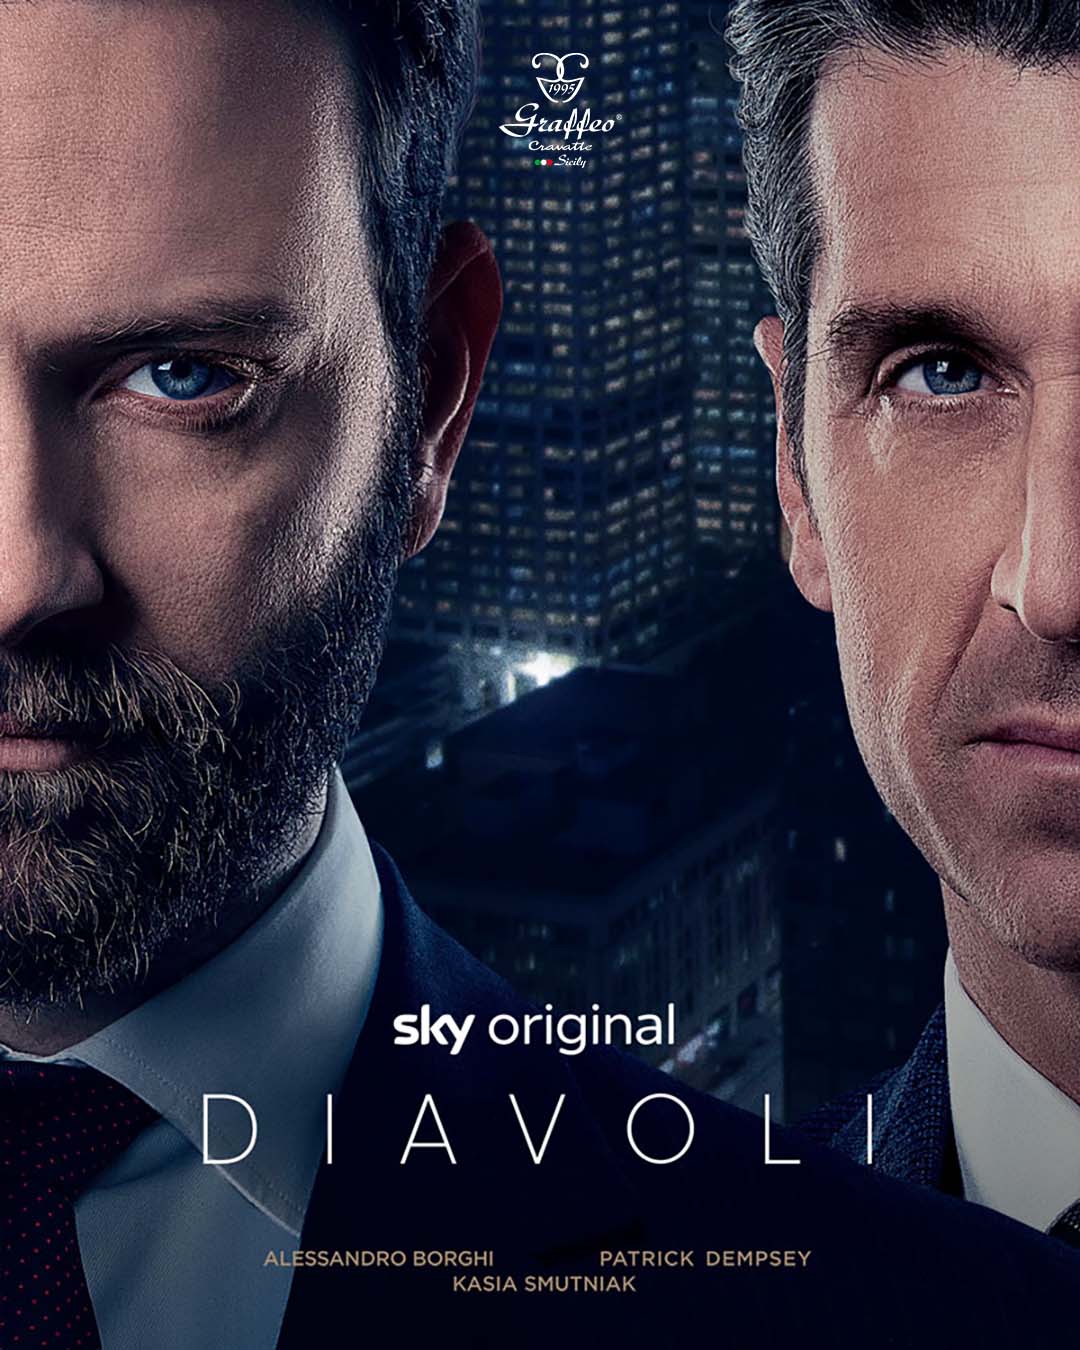 Cravatte indossate da Partick Dempsey e Alessandro Borghi nella Serie TV Sky "Diavoli"